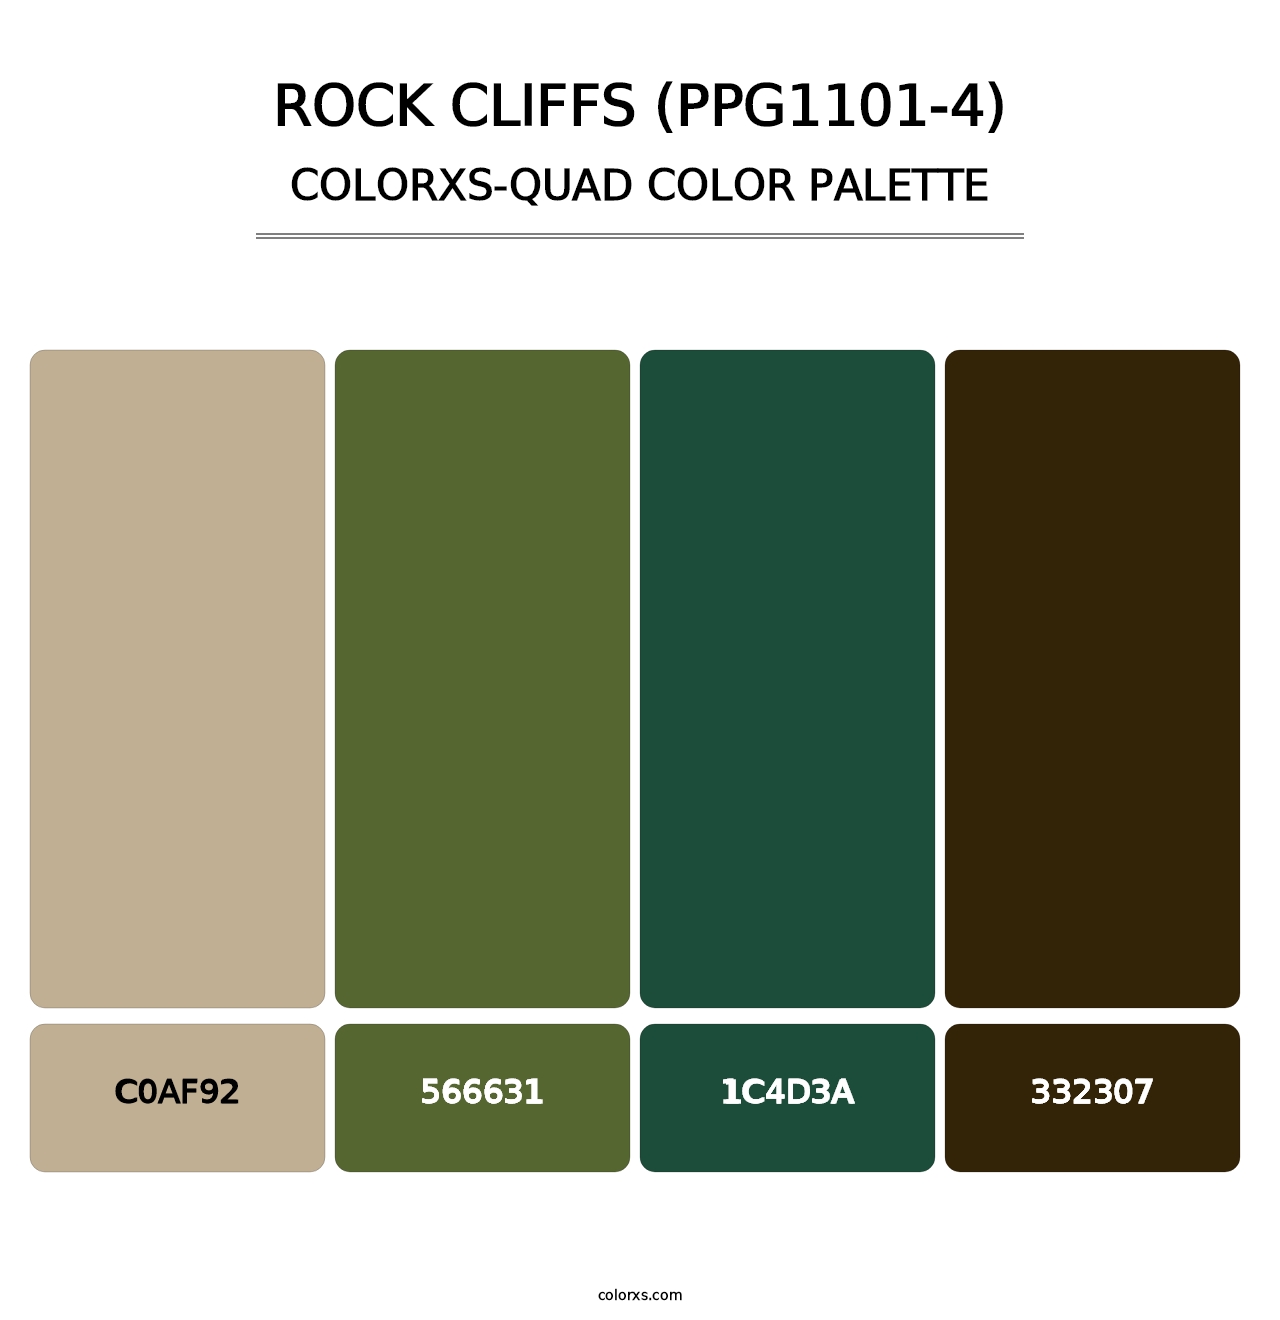 Rock Cliffs (PPG1101-4) - Colorxs Quad Palette